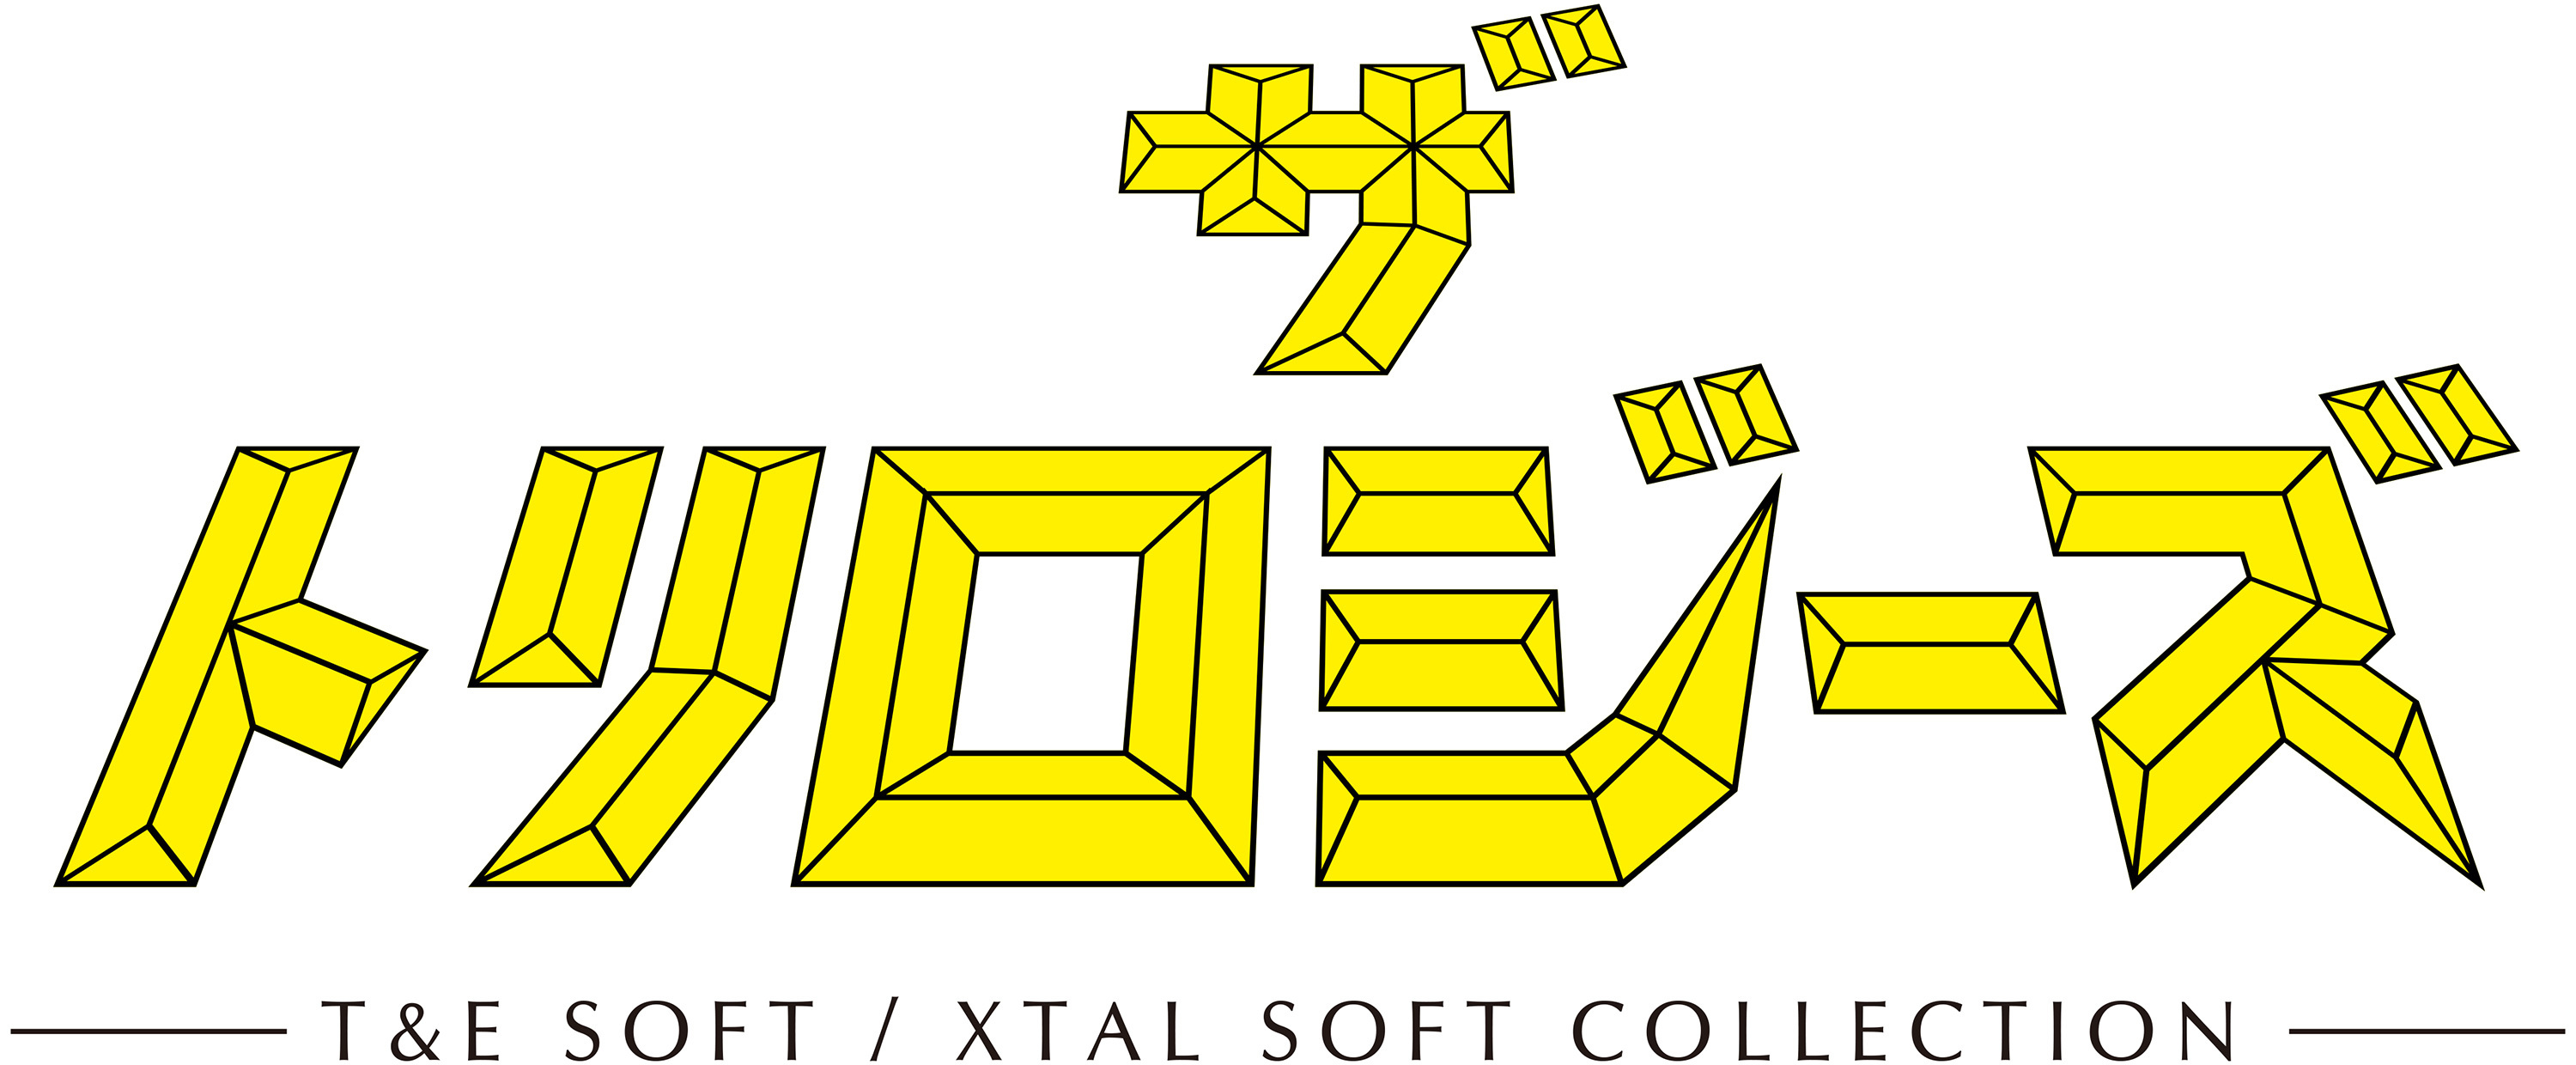 プロジェクトEGG 18周年記念作品　
『プロジェクトEGG』ゲームパッケージ第18弾
『ザ・トリロジーズ -T&E SOFT / XTAL SOFT COLLECTION-』
2020年2月6日より情報初公開・事前予約開始　
-1980～90年代に発売されたT&E SOFT・XTAL SOFTの
名作タイトルを集めた決定盤、堂々登場！-